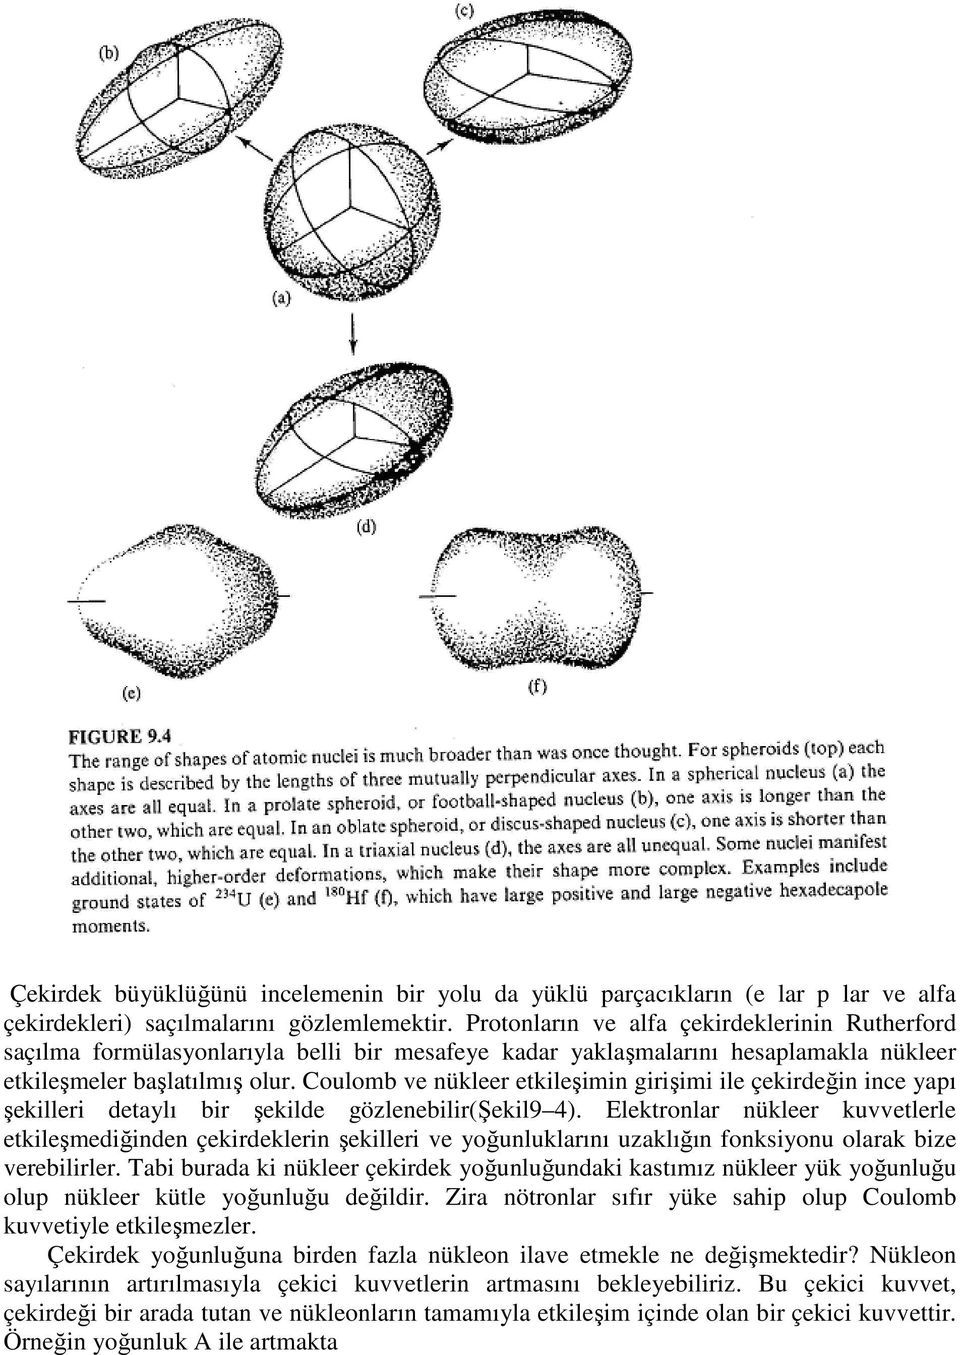 Coulomb ve nükleer etkileşimin girişimi ile çekirdeğin ince yapı şekilleri detaylı bir şekilde gözlenebilir(şekil9 4).